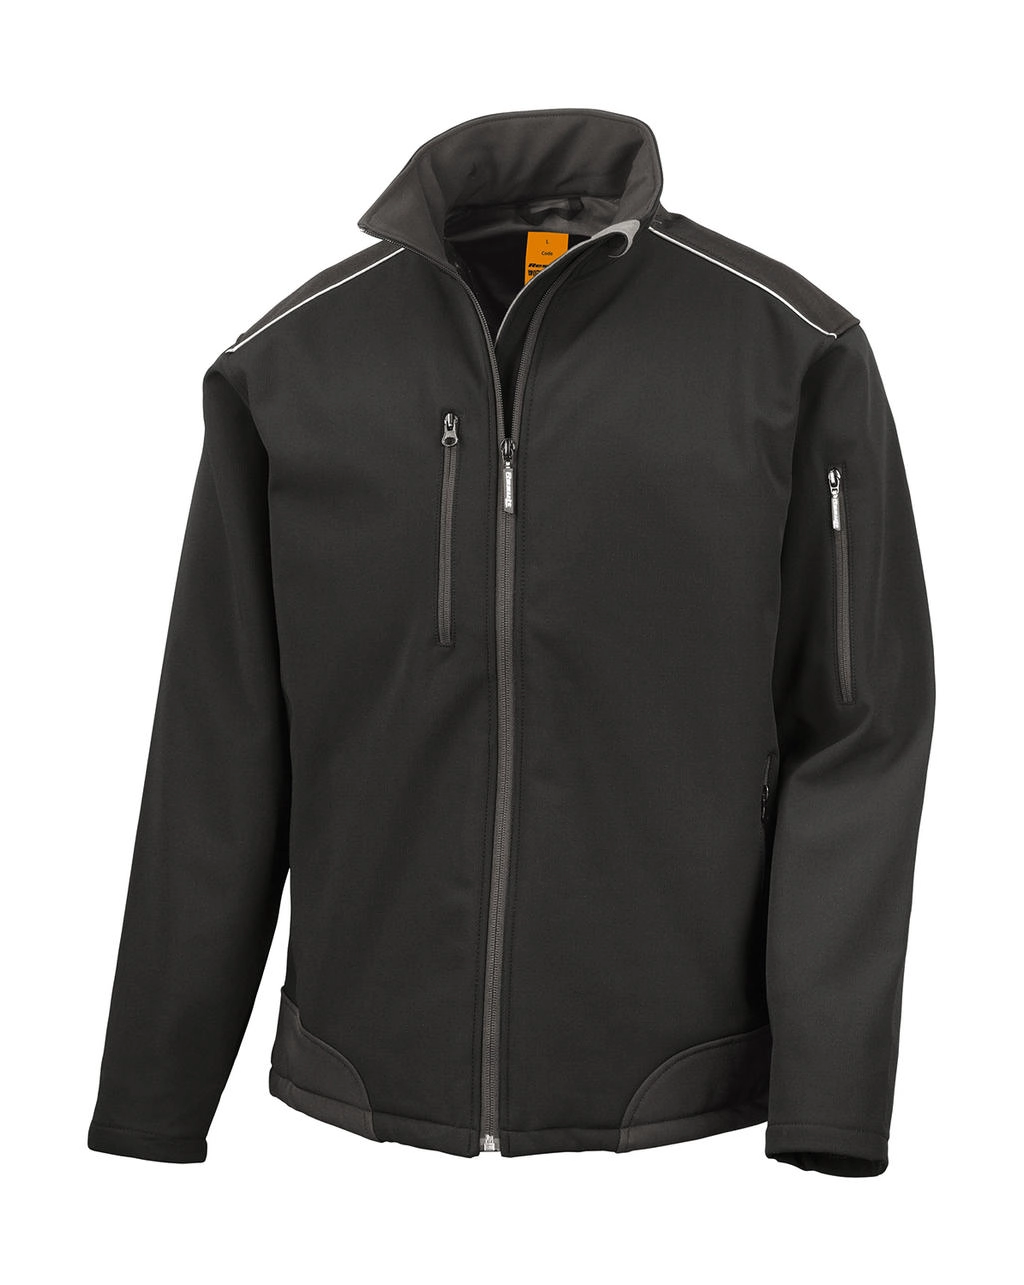 Ripstop Softshell Work Jacket zum Besticken und Bedrucken in der Farbe Black/Black mit Ihren Logo, Schriftzug oder Motiv.